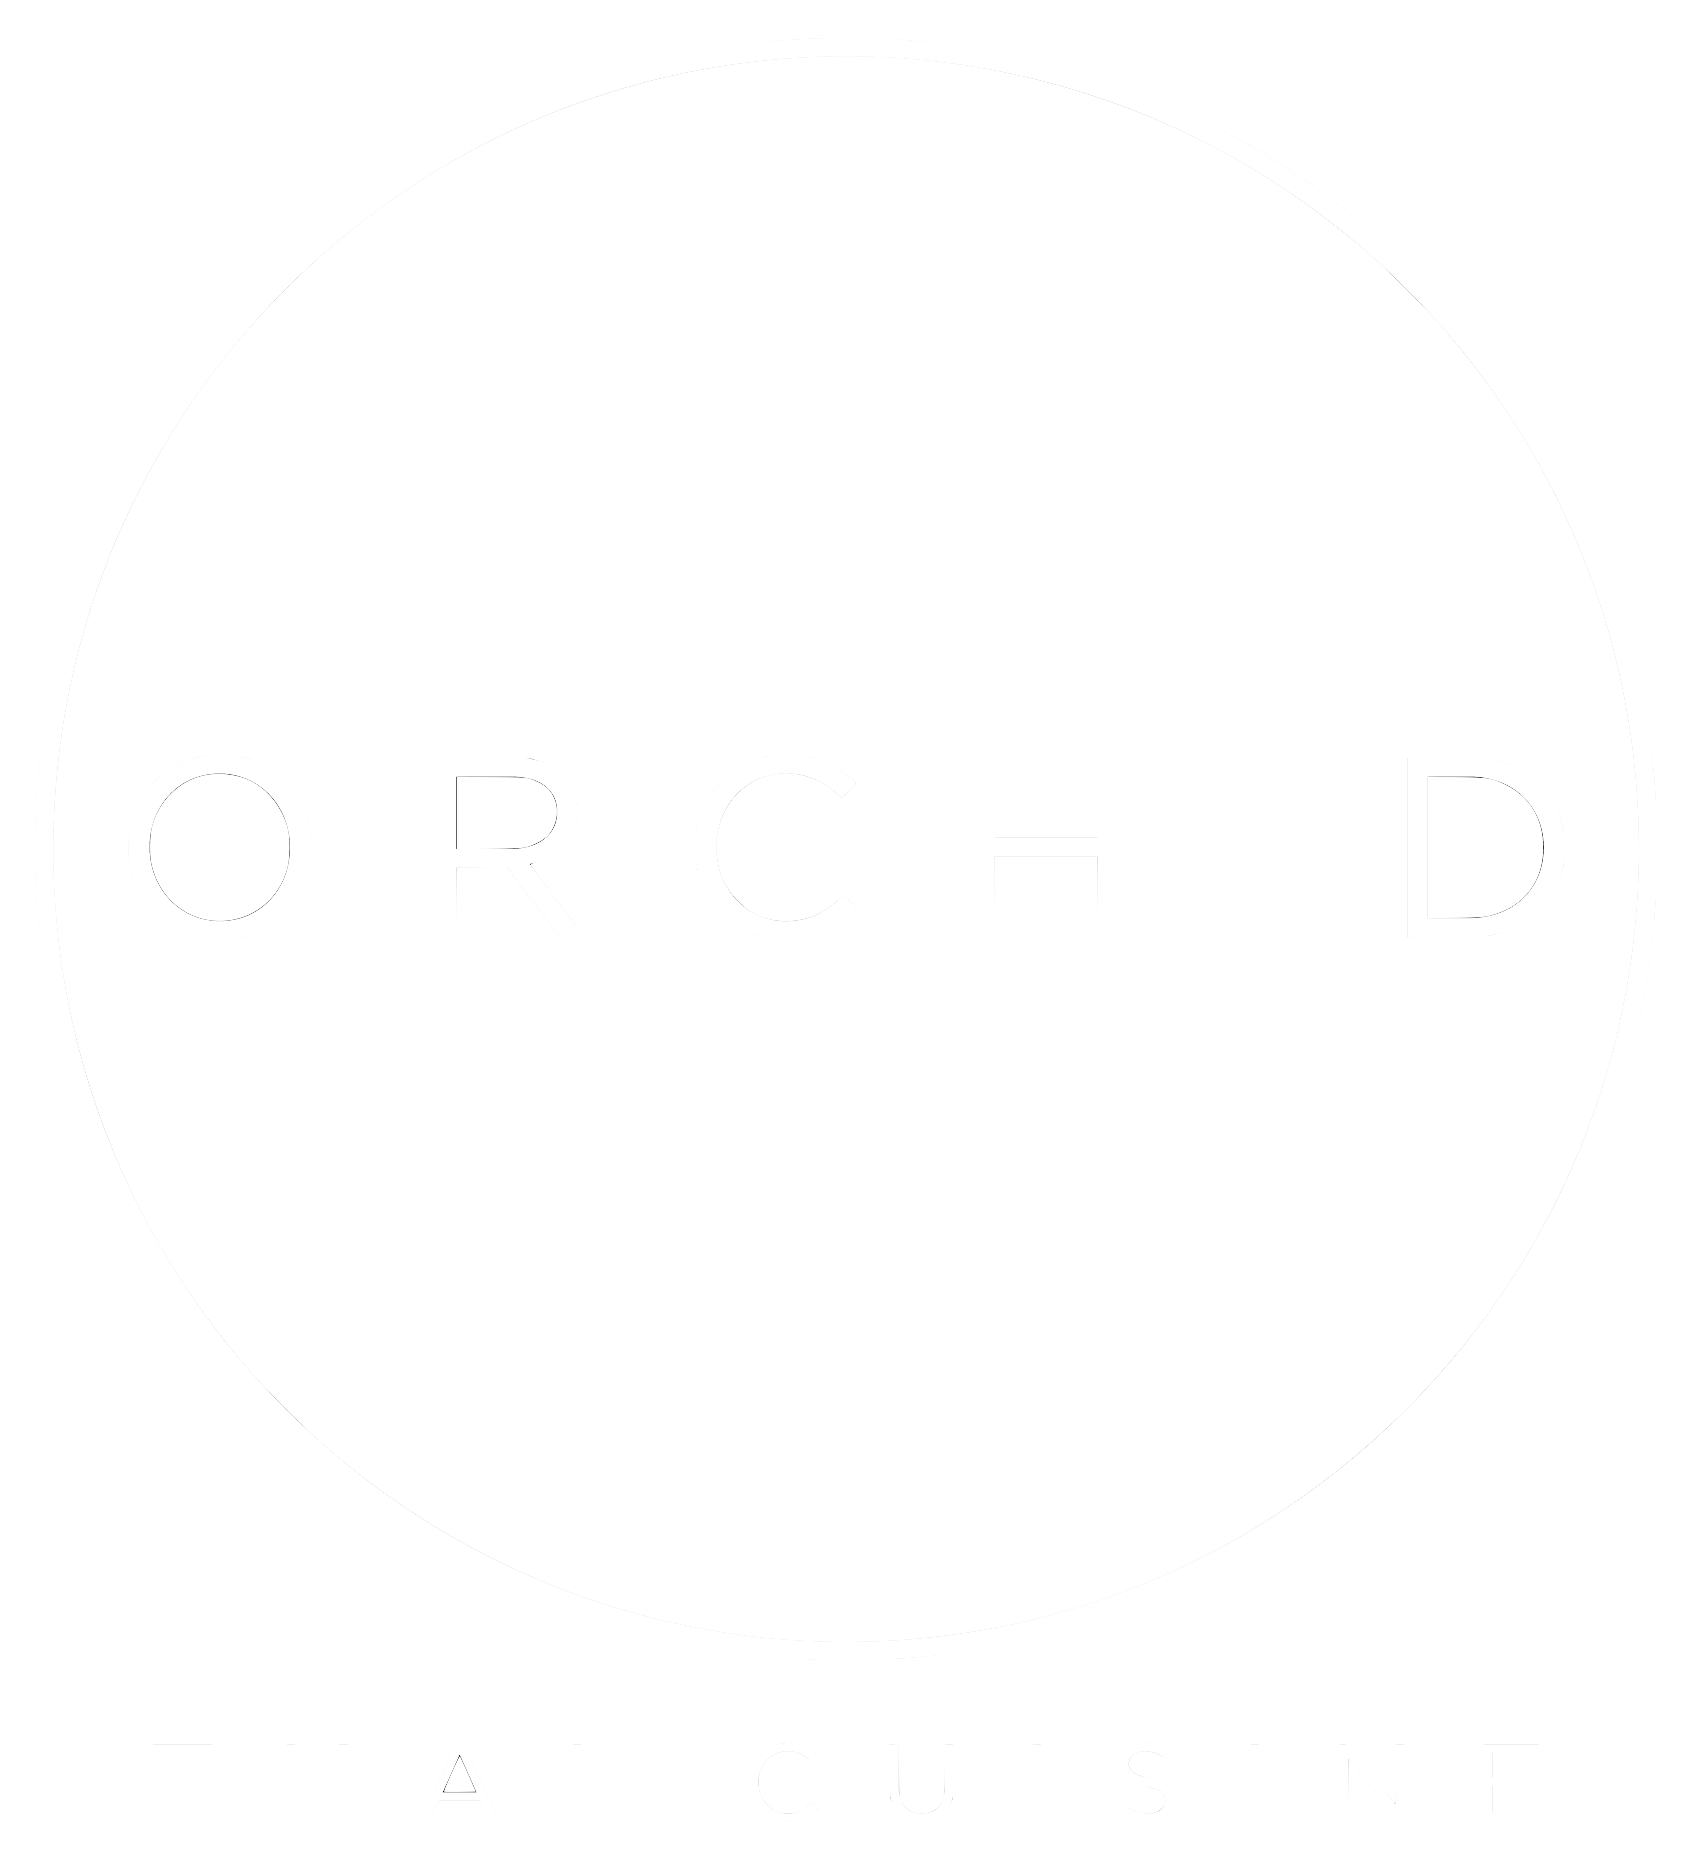 Orchid Thai Cuisine